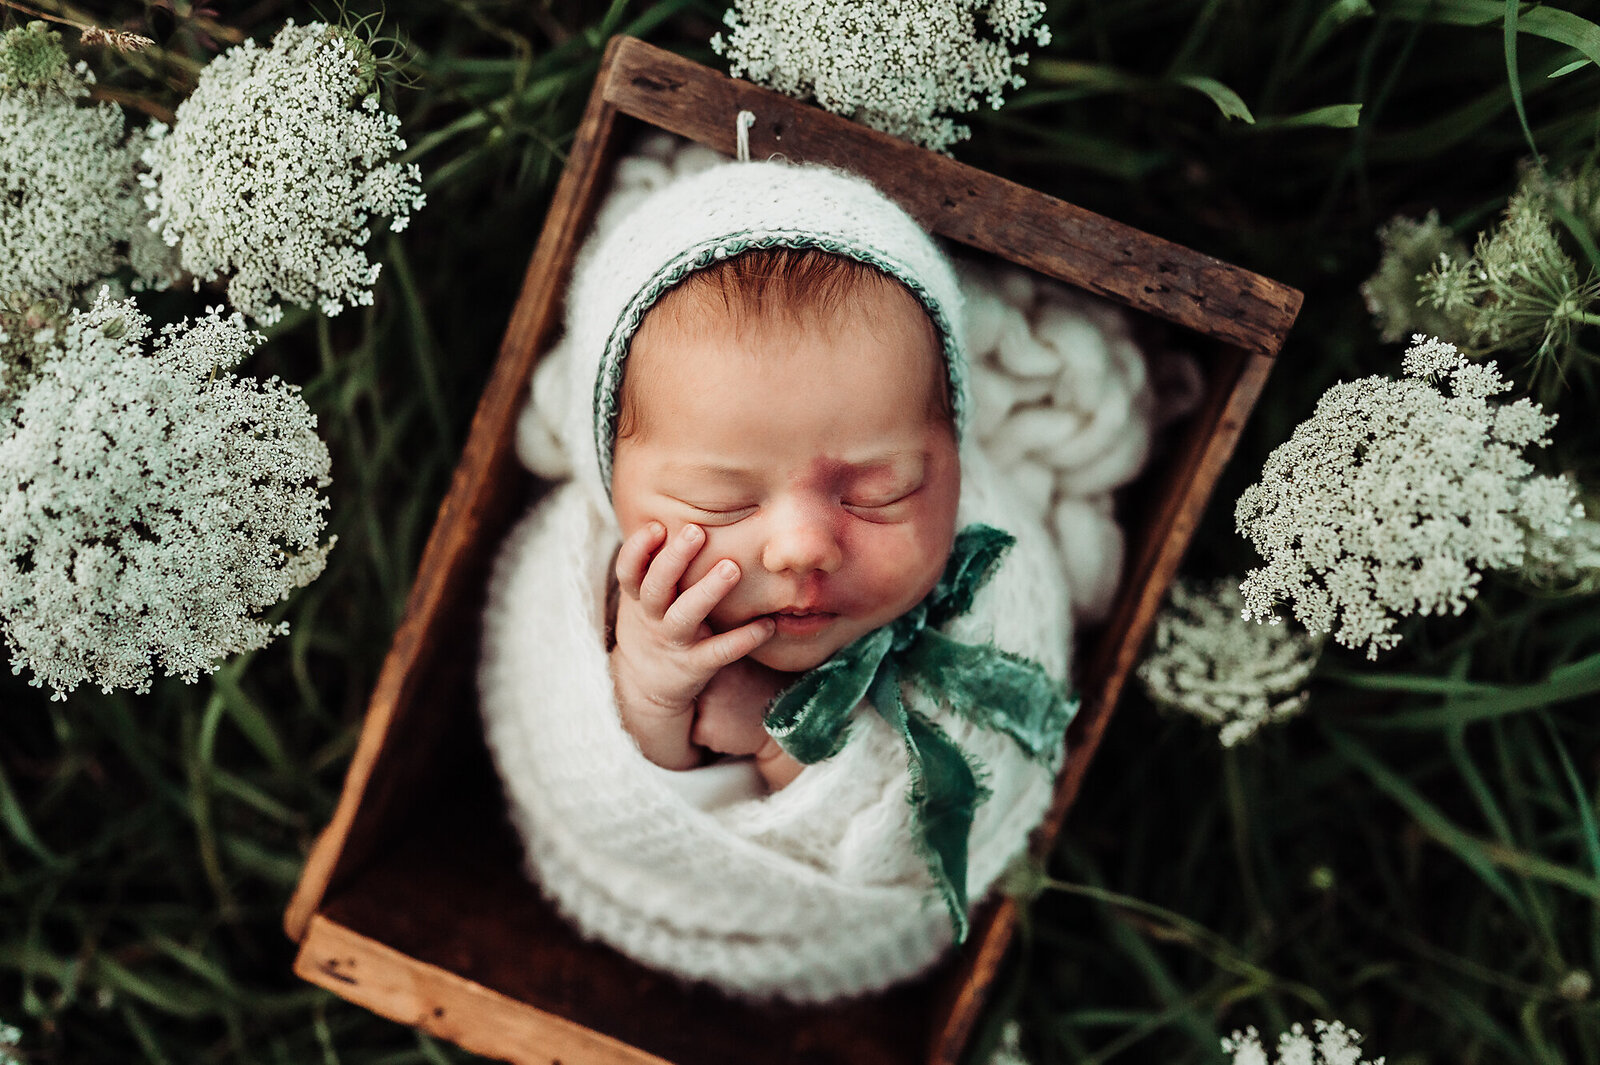 Newborn Baby Girl with velvet tie bonnet